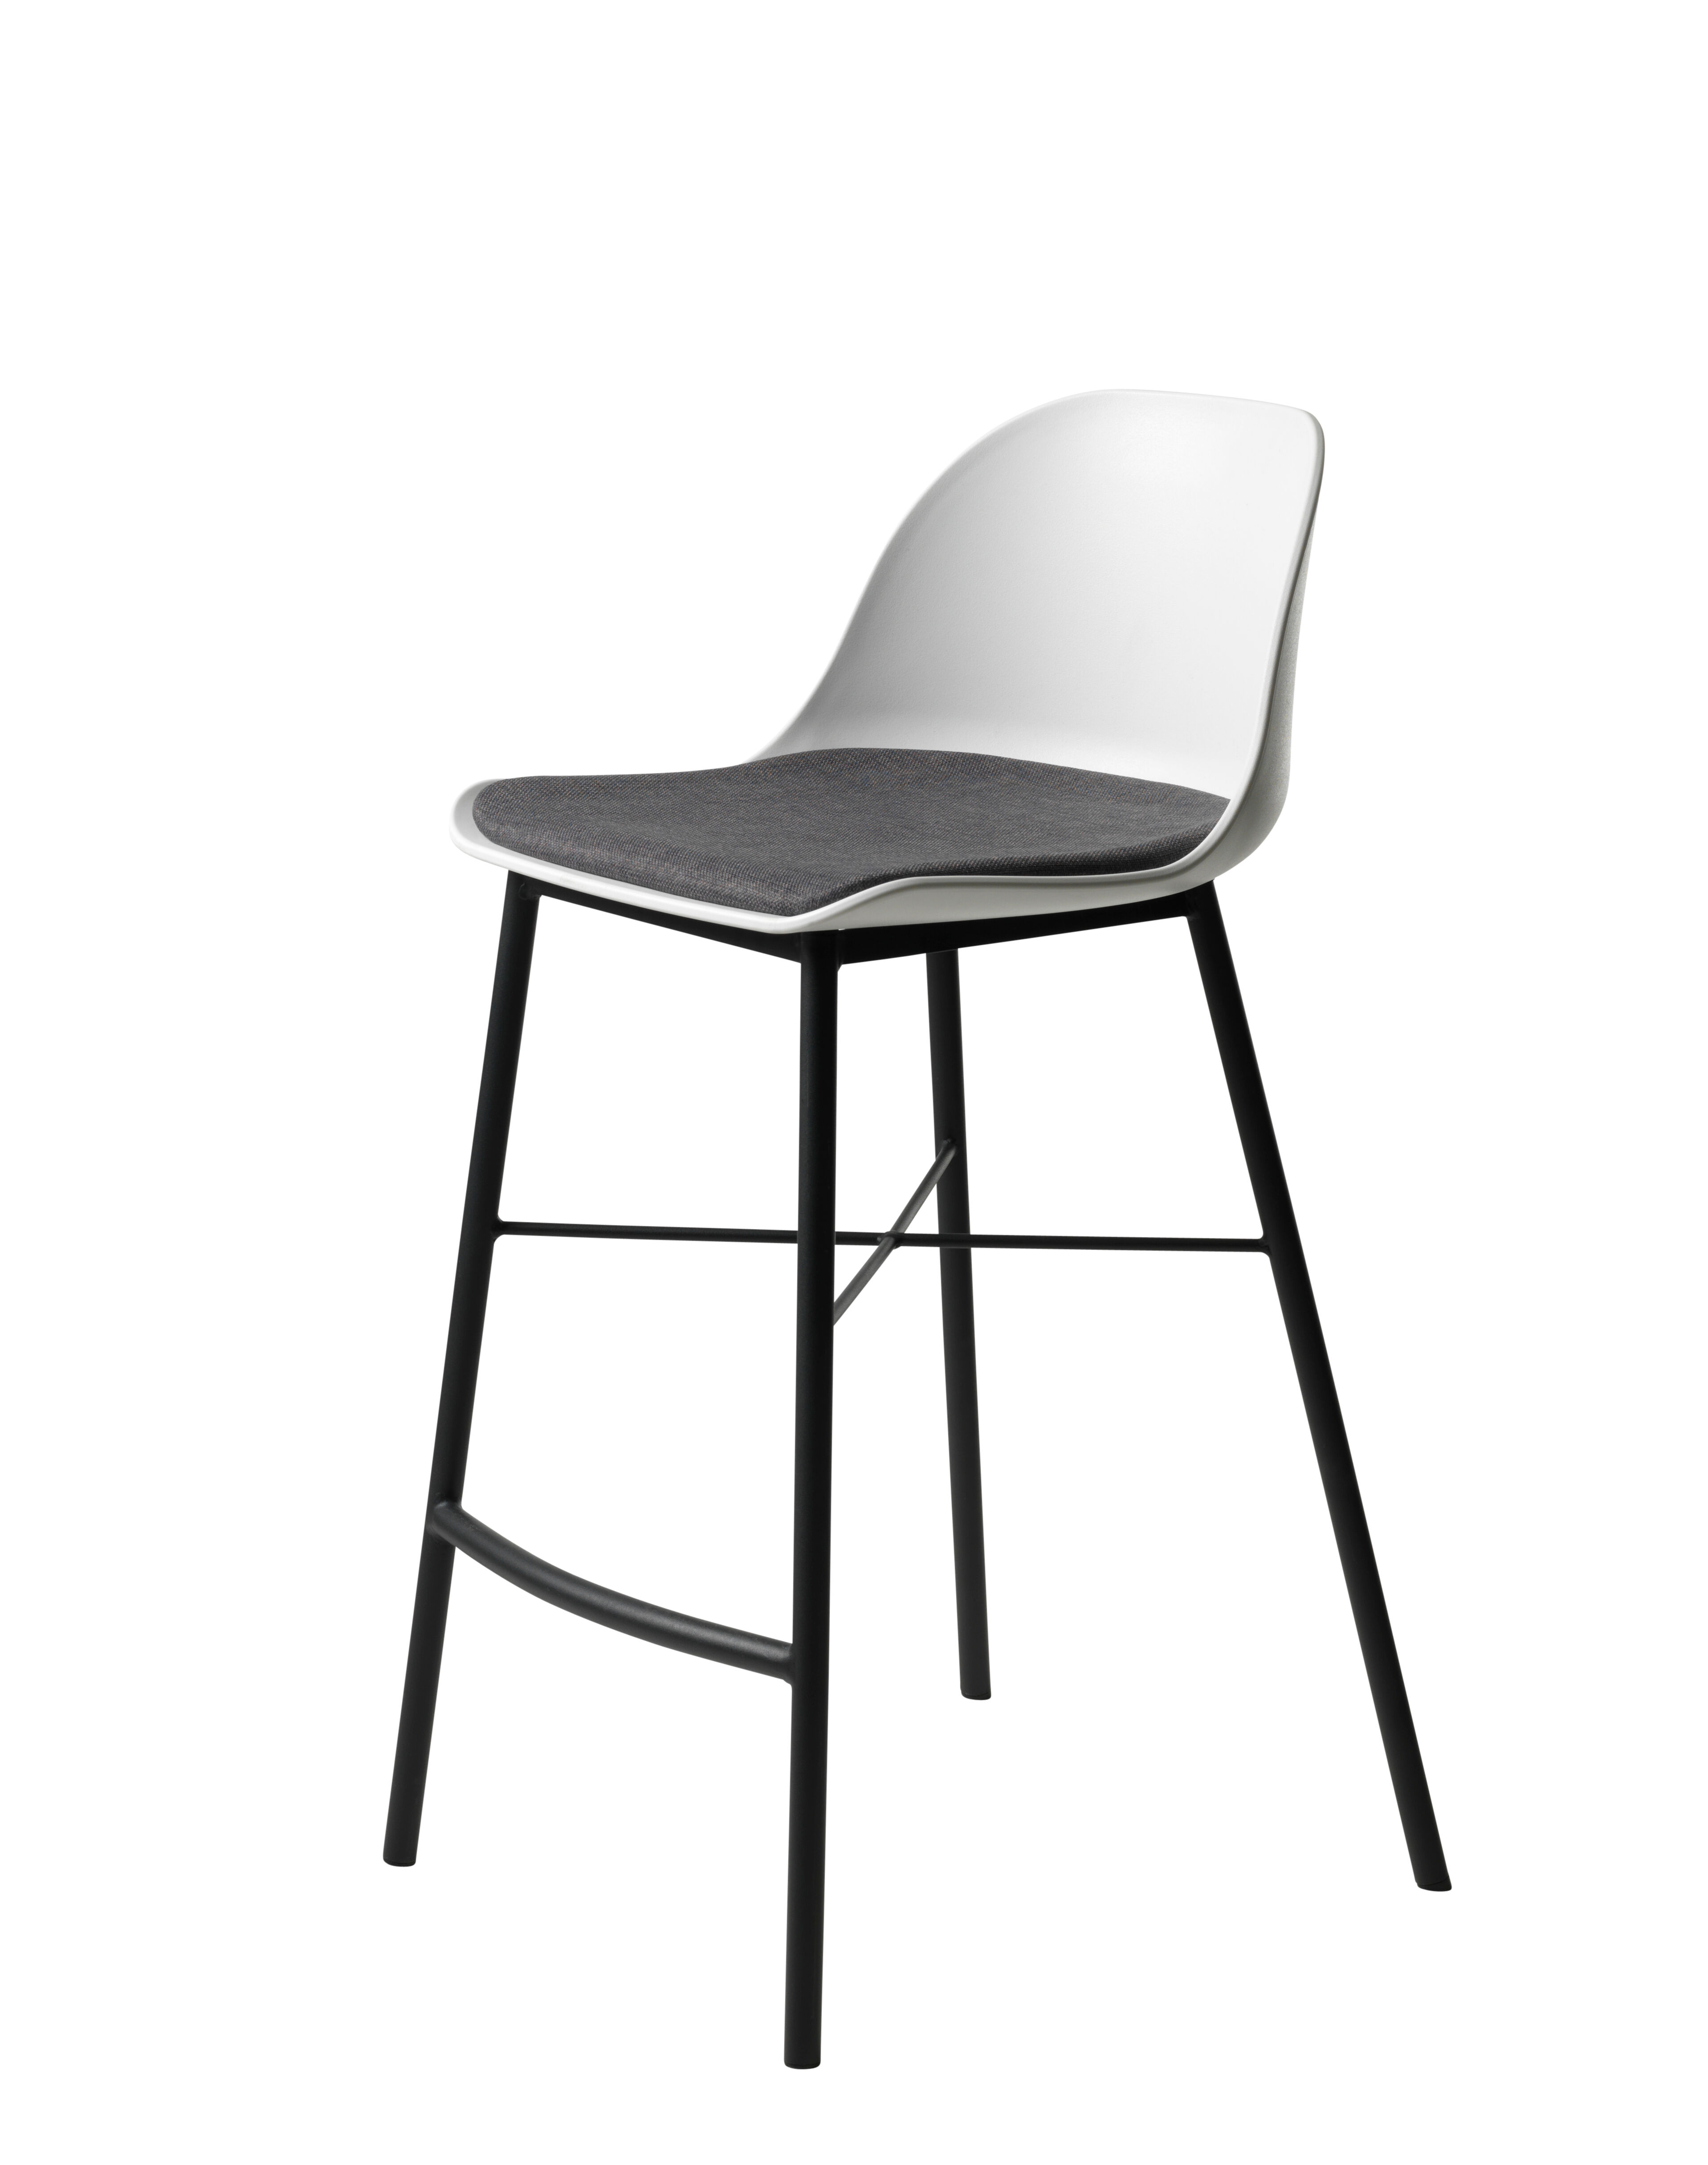 Whise barstol i hvit og grå, stell i svart metall.